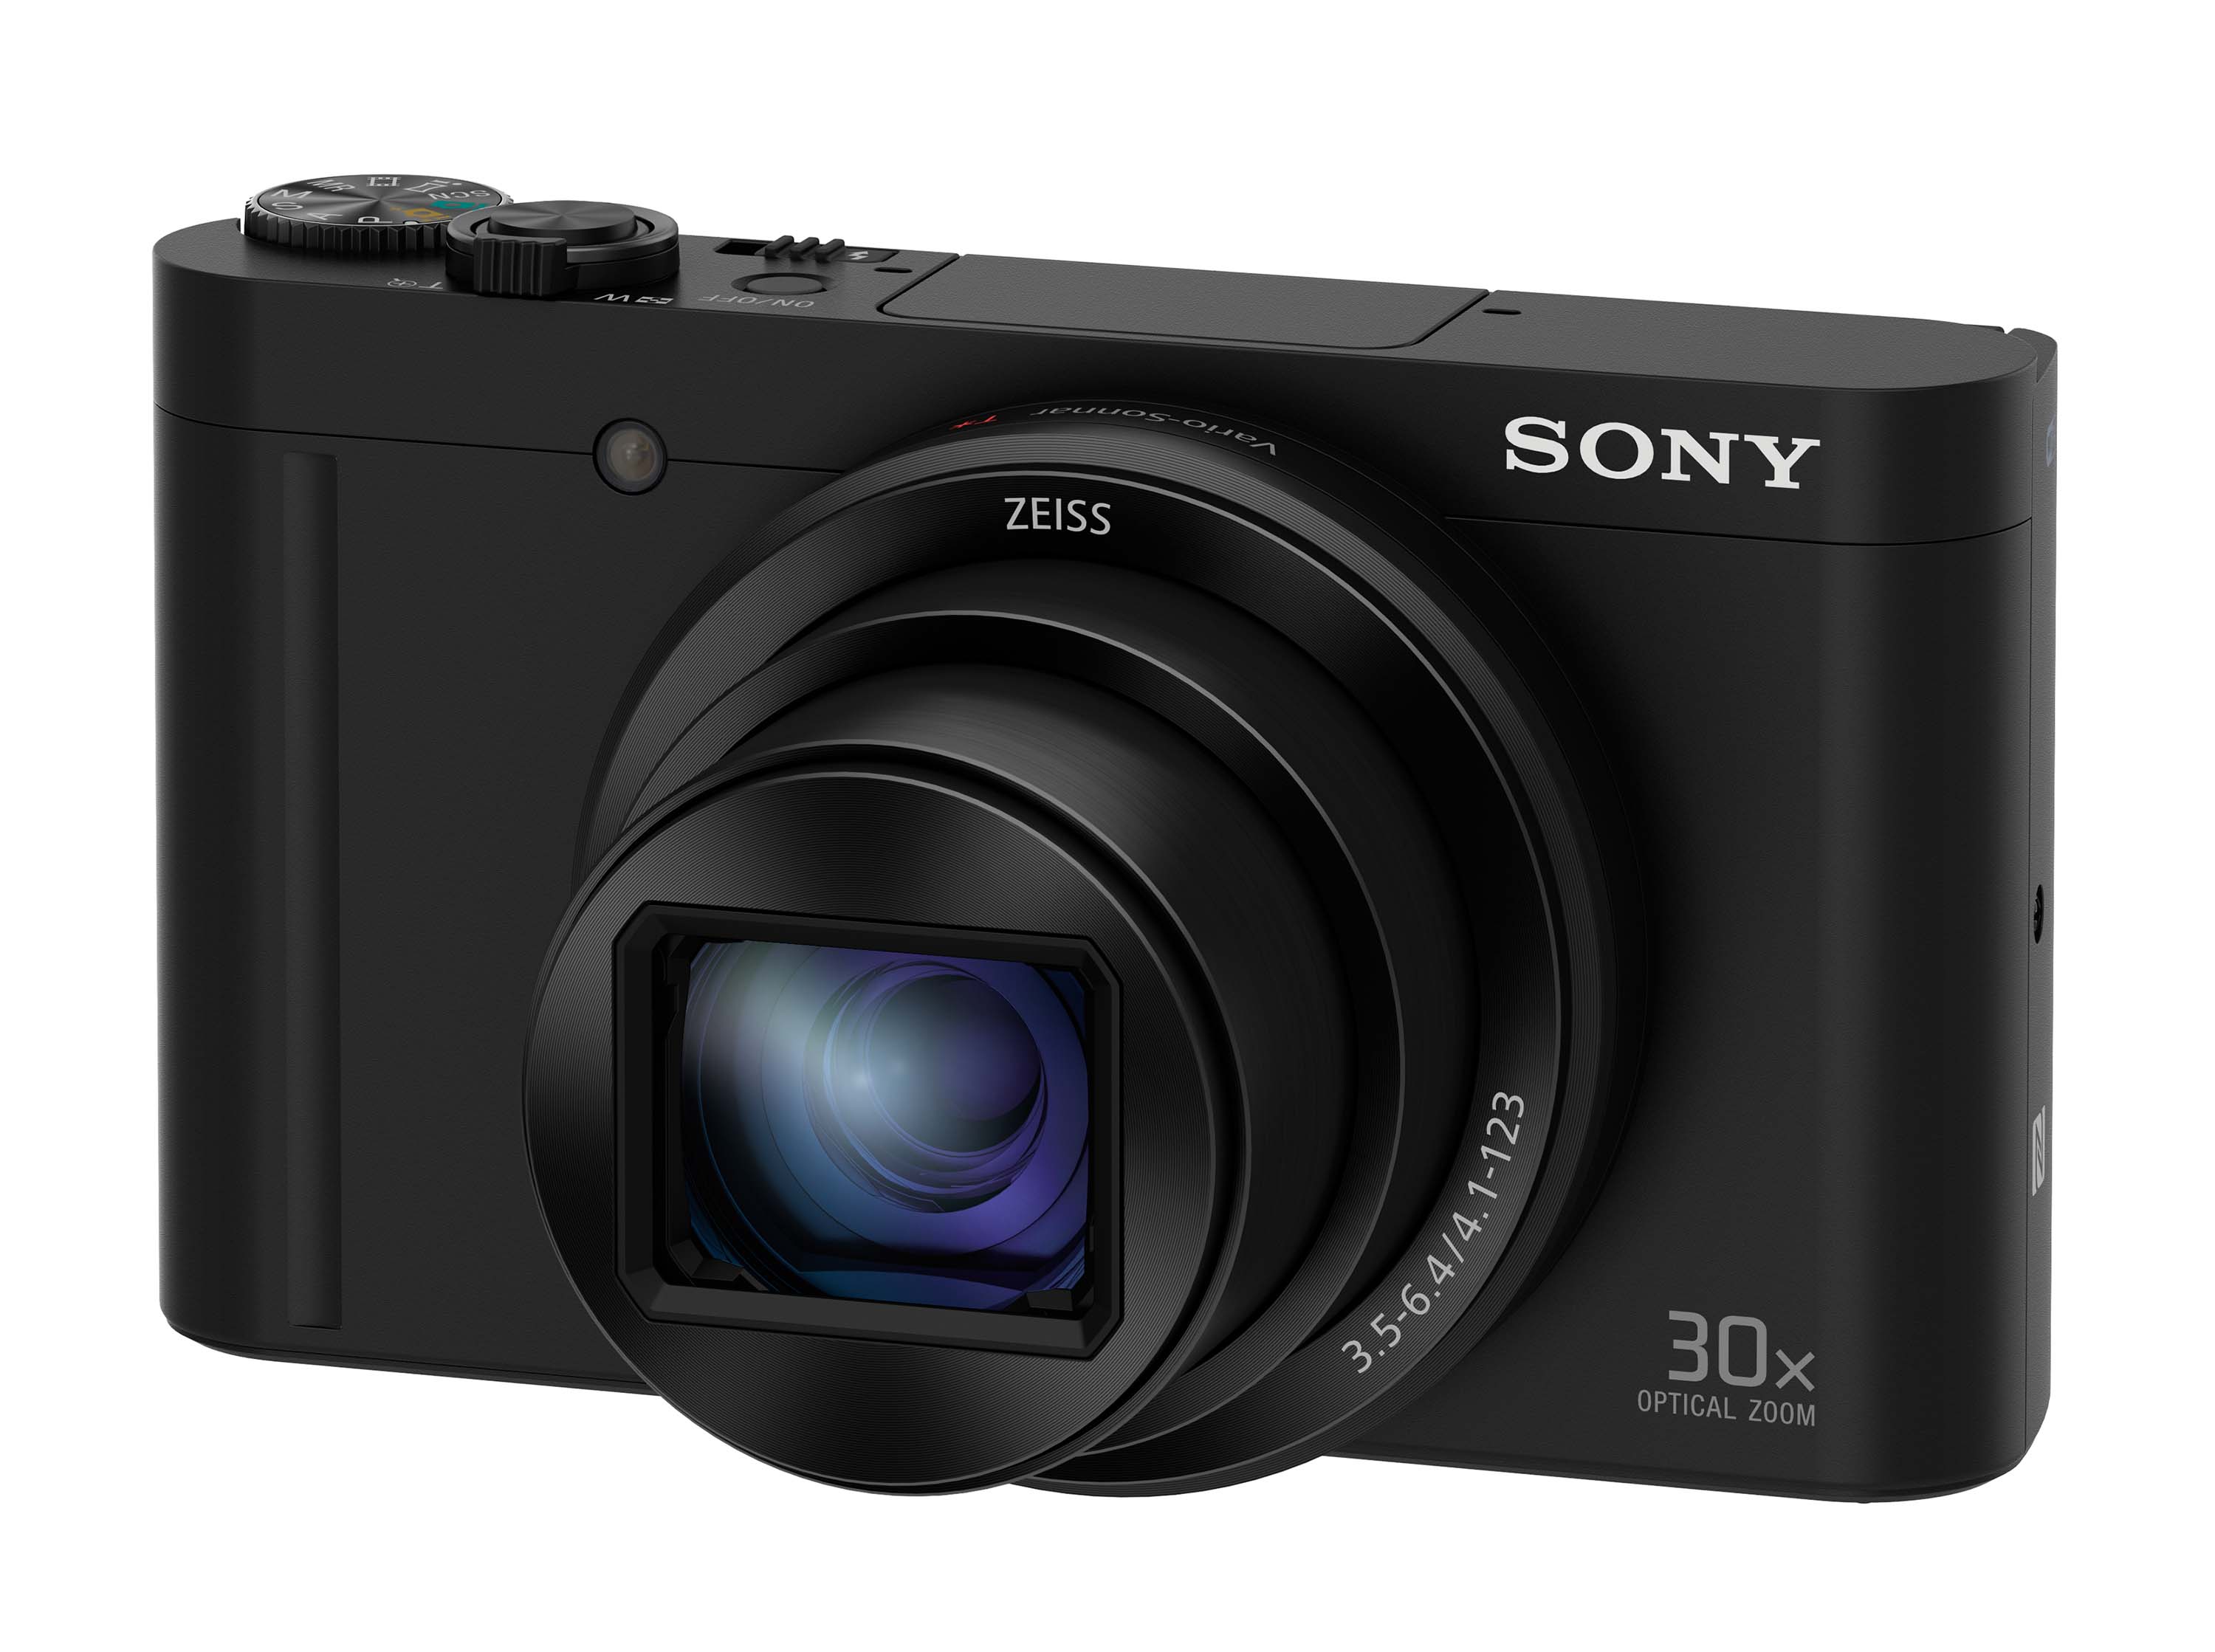 最新ショップニュース 値下げしました。SONY WX500 コンパクトデジタルカメラ デジタルカメラ